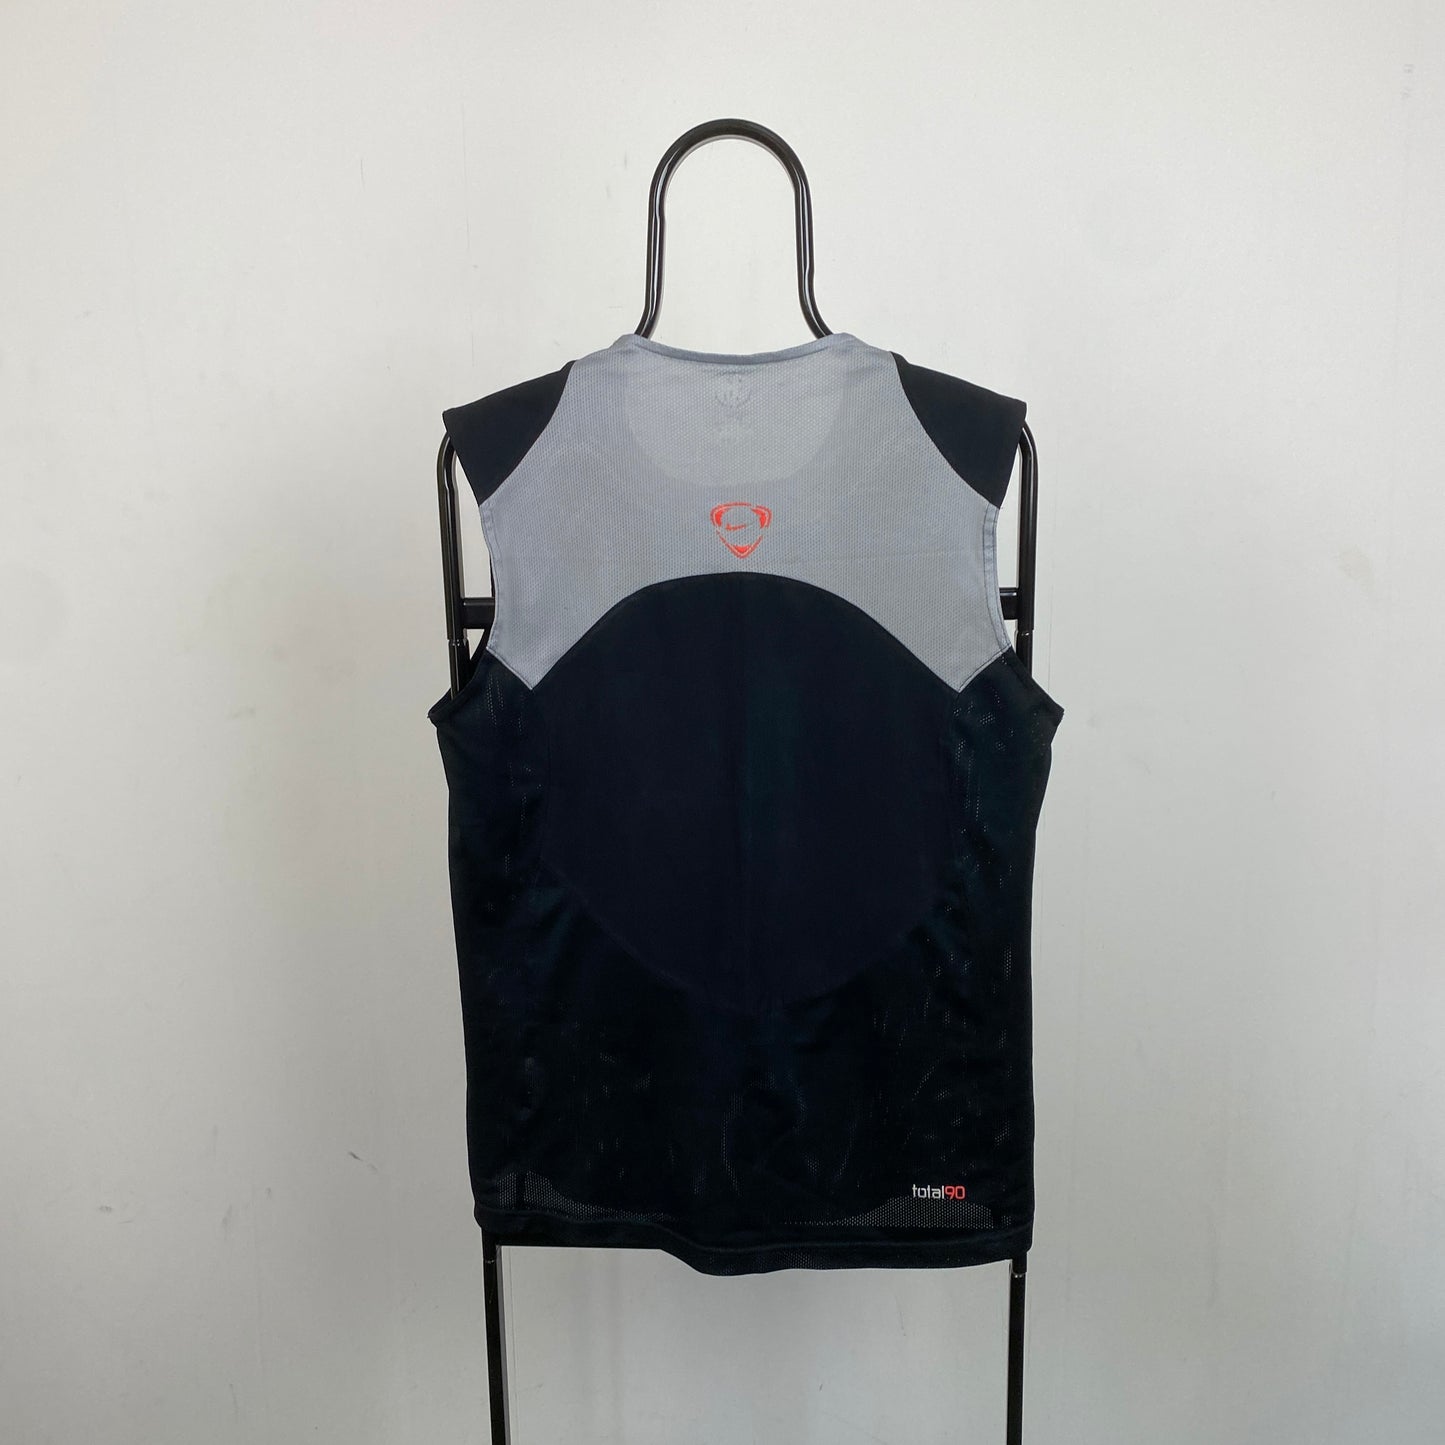 00s Nike Total 90 Vest T-Shirt Black Medium